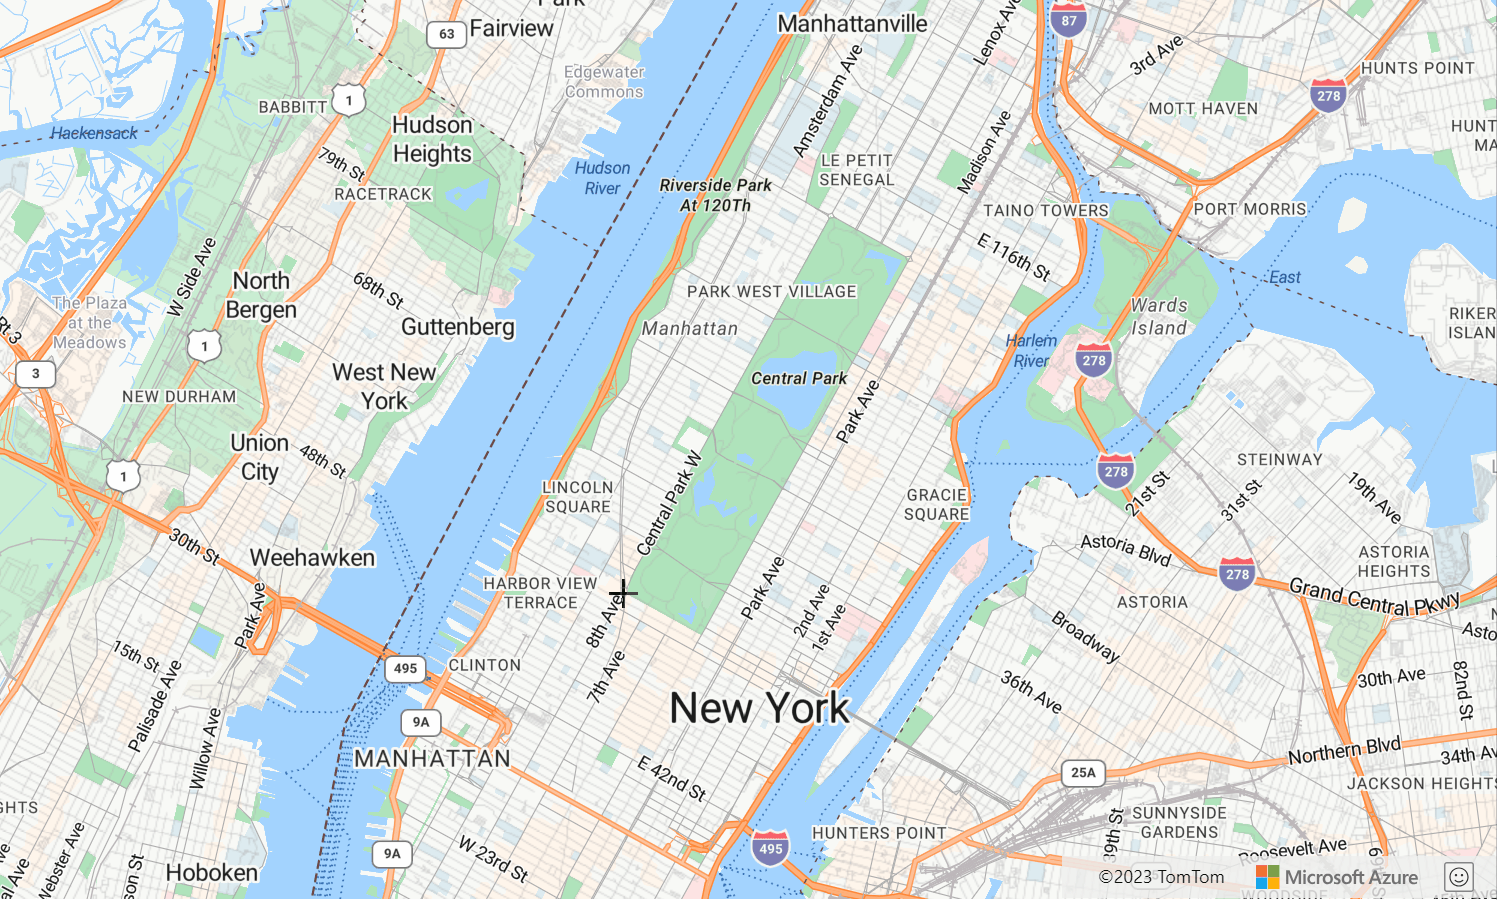 Snímek obrazovky s mapou znázorňující centrální park v New Yorku, kde je správce výkresu znázorněn pomocí kreslicí čáry